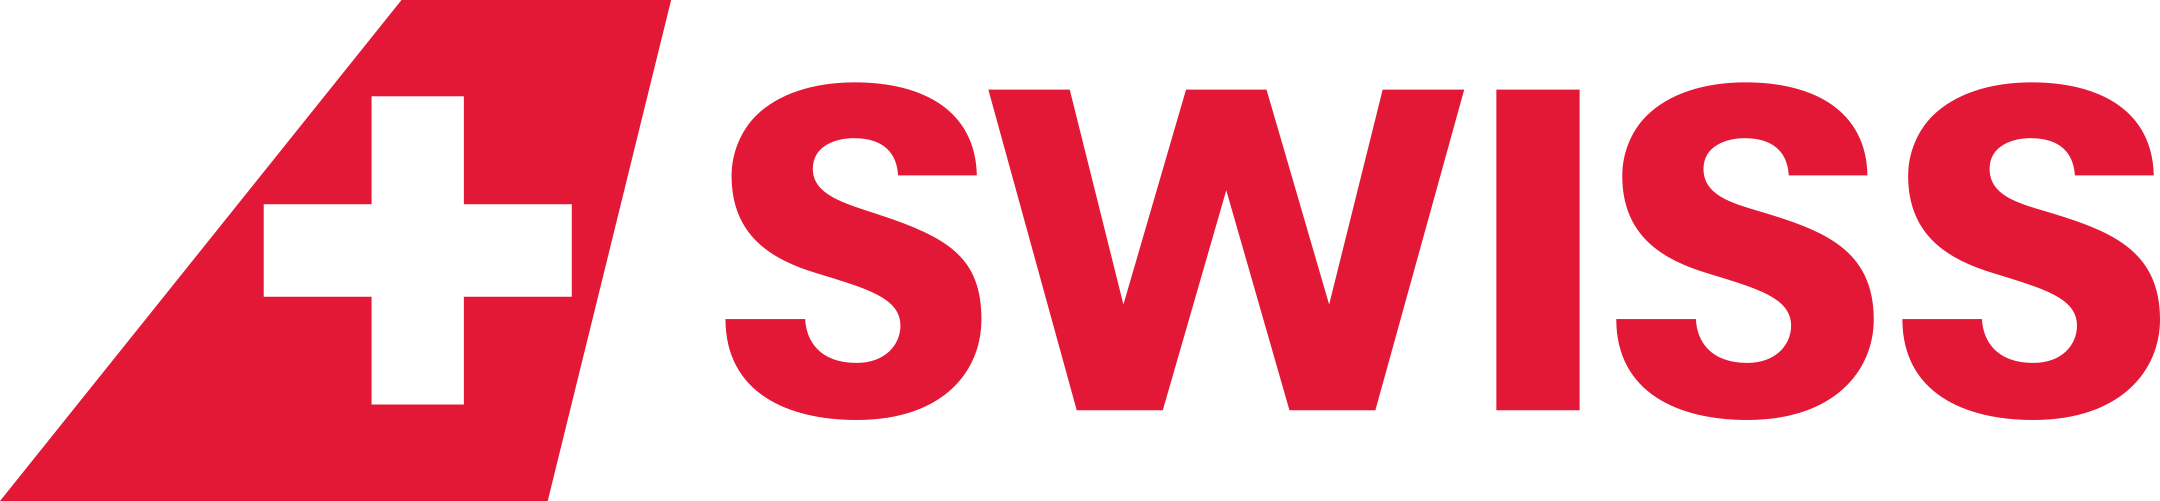 swiss air lines logo 1 - Swiss Air Lines Logo